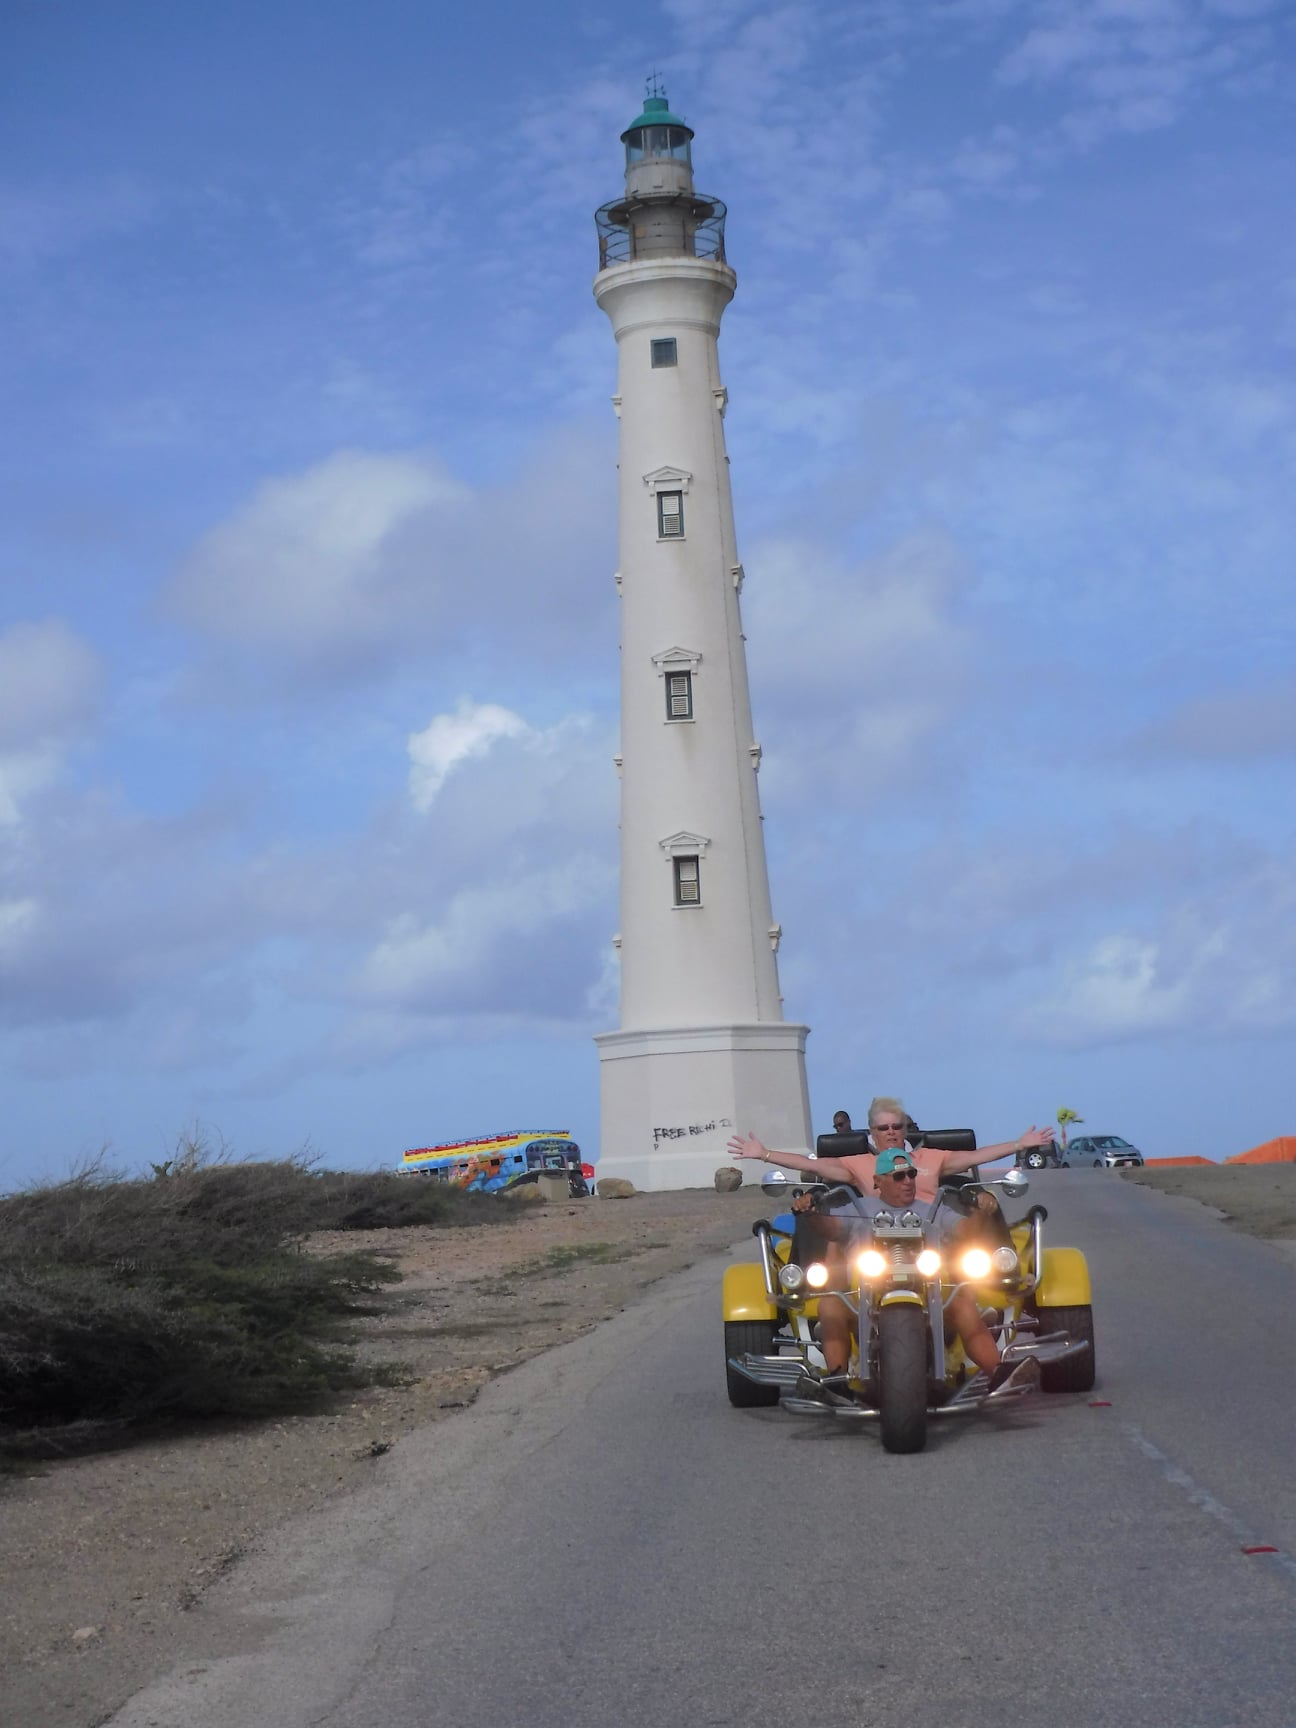 TRIKES ARUBA AFTERNOON TOURS Aruba - vacaystore.com